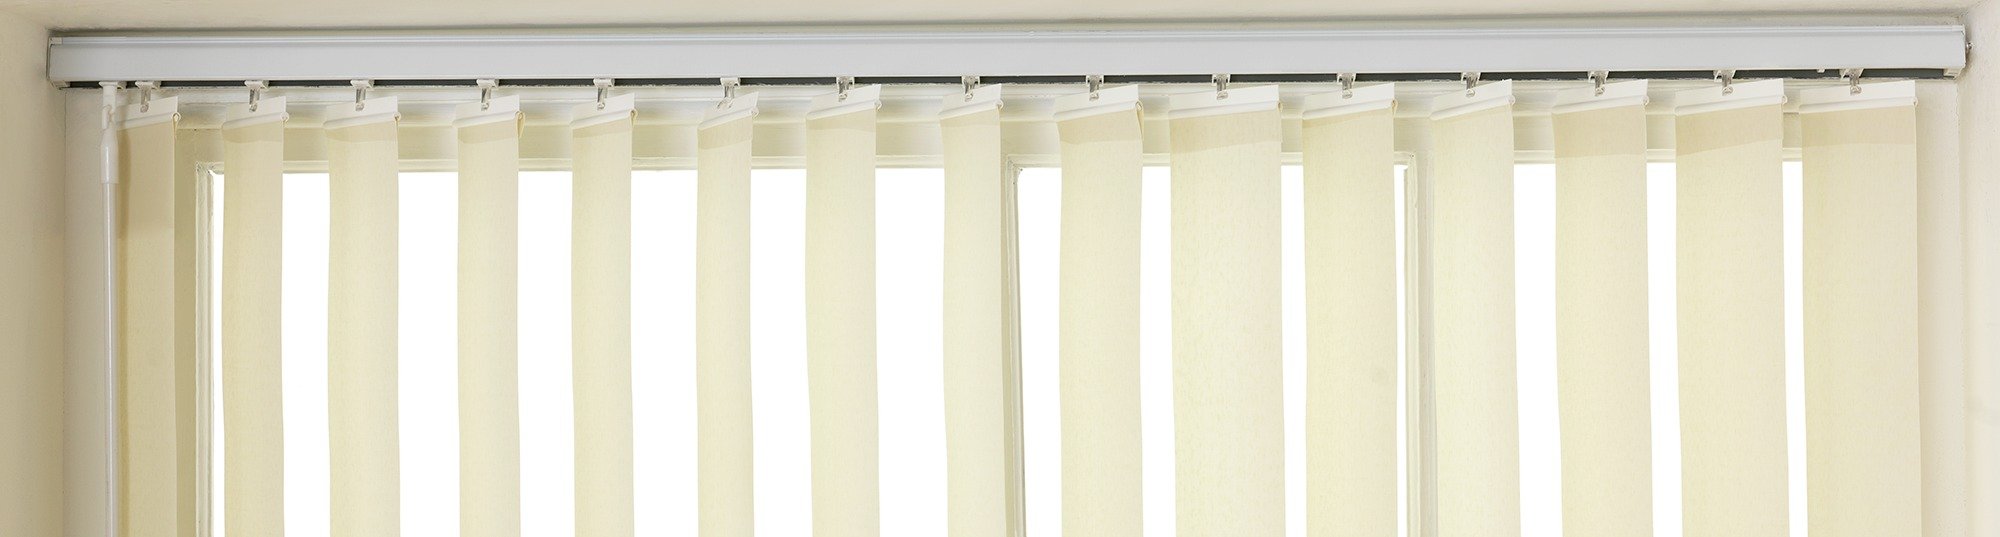 Argos Home Vertical Blind Headrail review